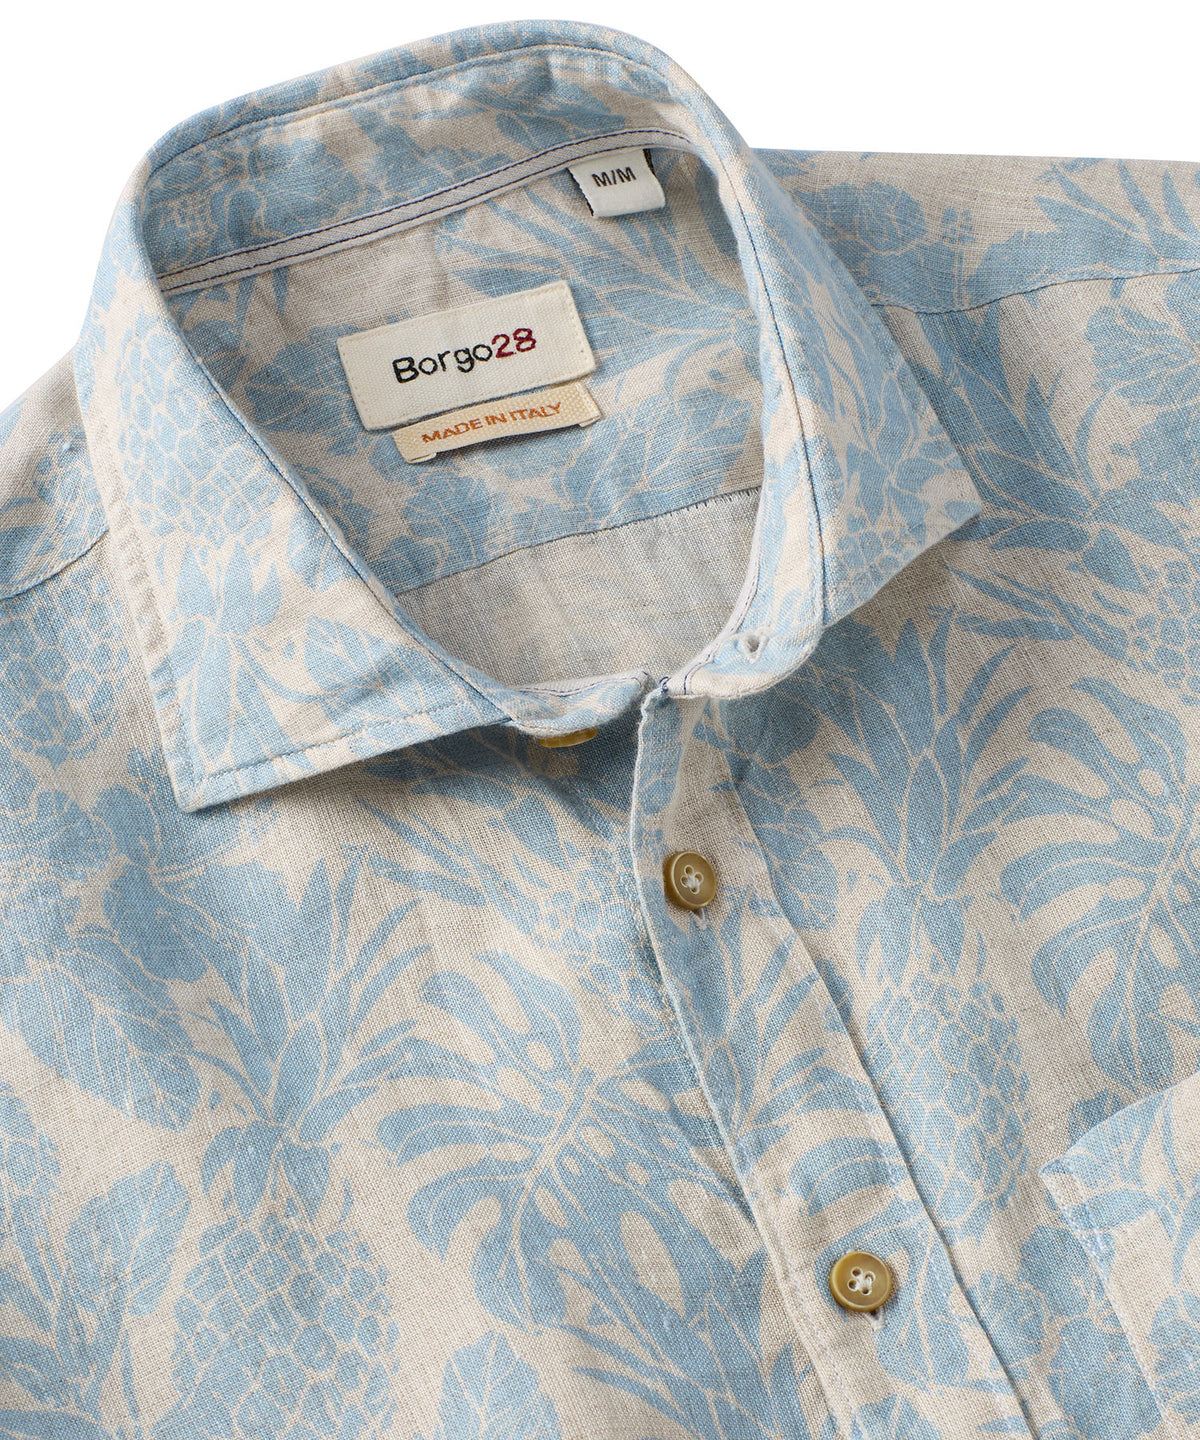 Pineapple Print Linen Sport Shirt